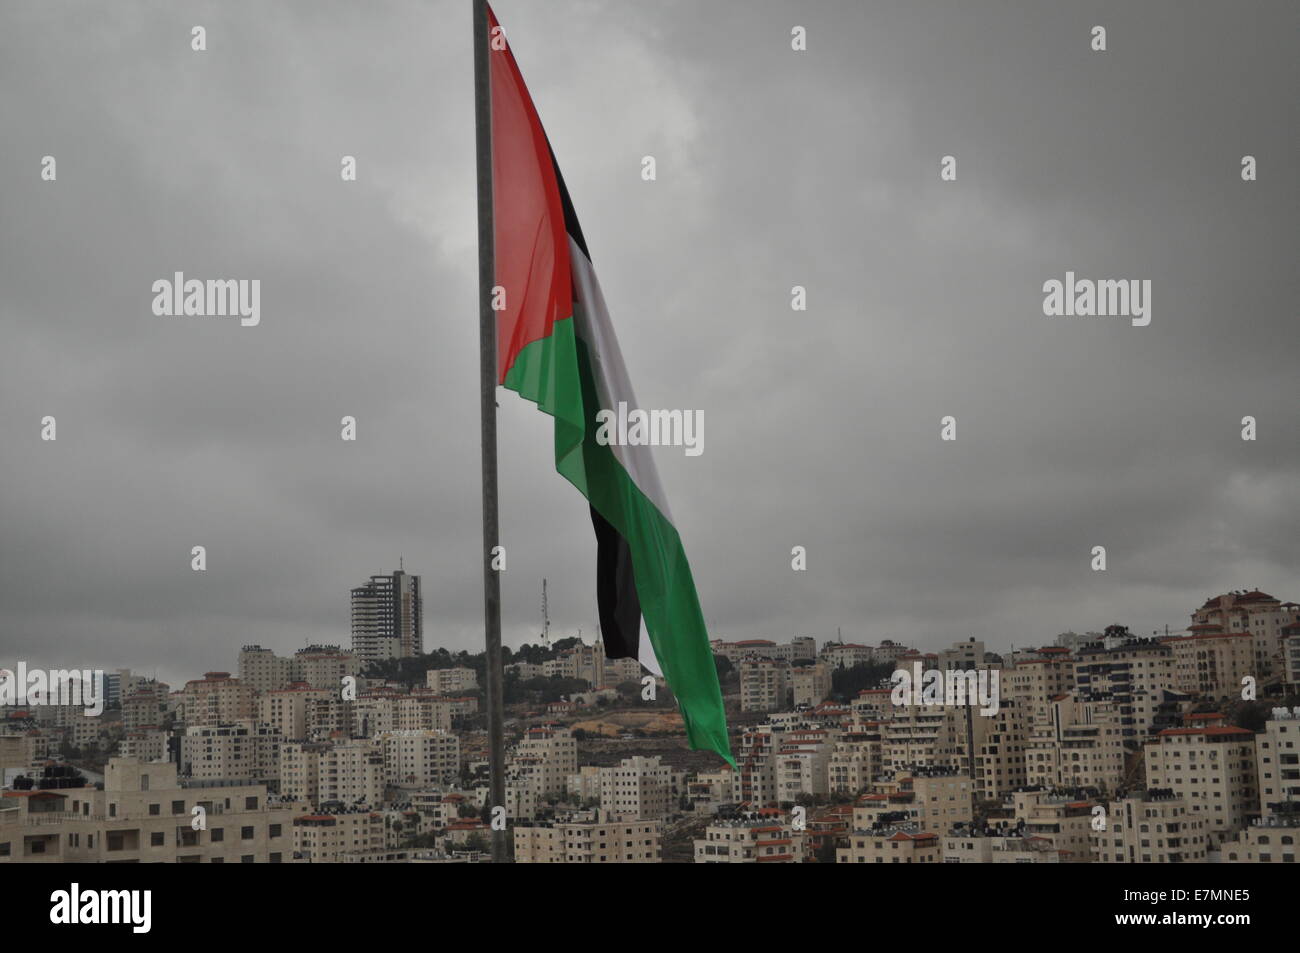 Drapeau Palestinan à Ramallah Banque D'Images